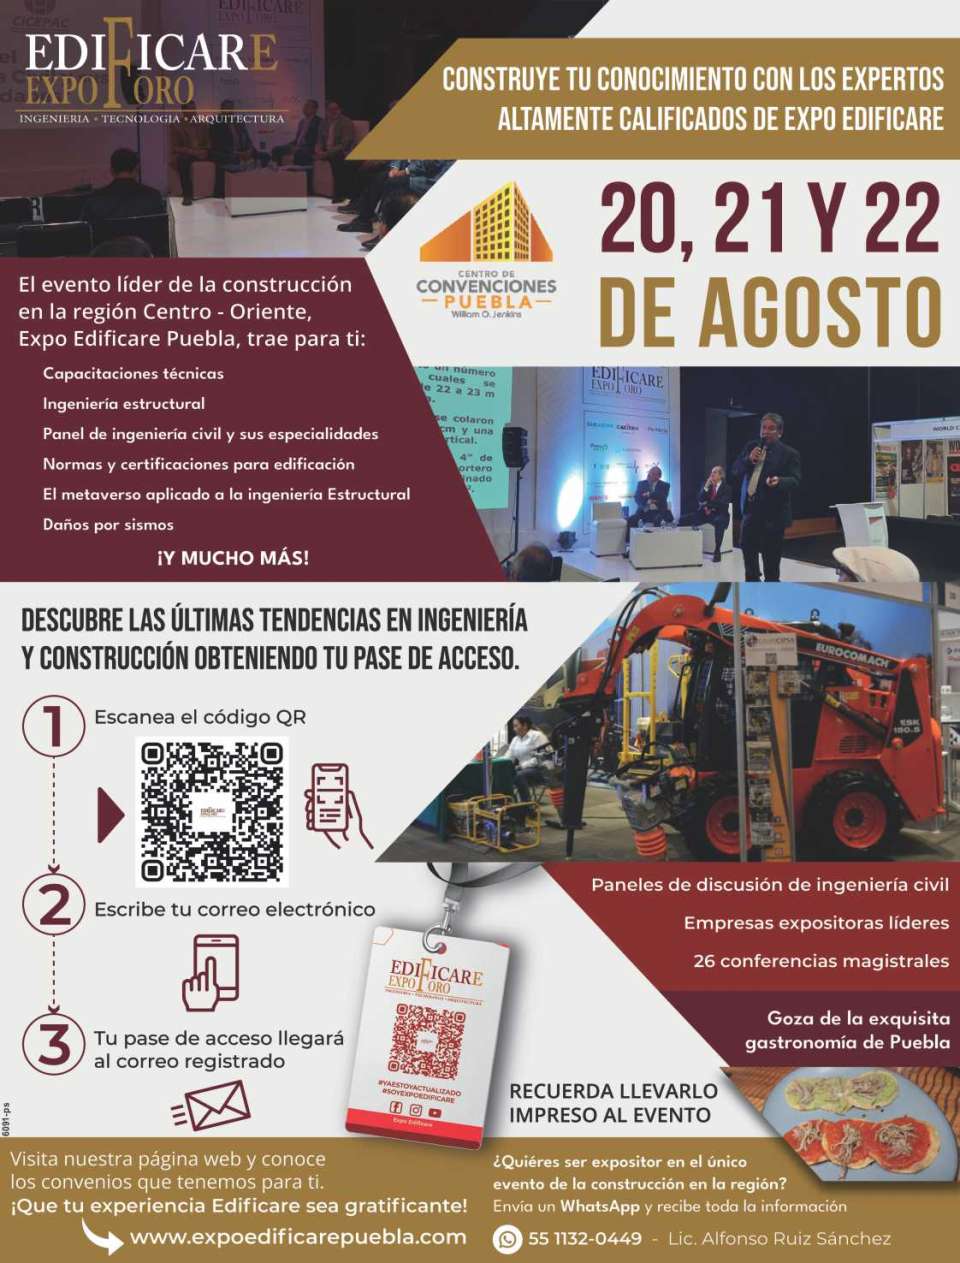 Expo Foro Edificare 2024 Puebla. Evento lider en la region Centro-Oriente de Mexico, del 20 al 22 de Agosto 2024 en el Centro de Convenciones William O. Jenkins en la Ciudad de Puebla.